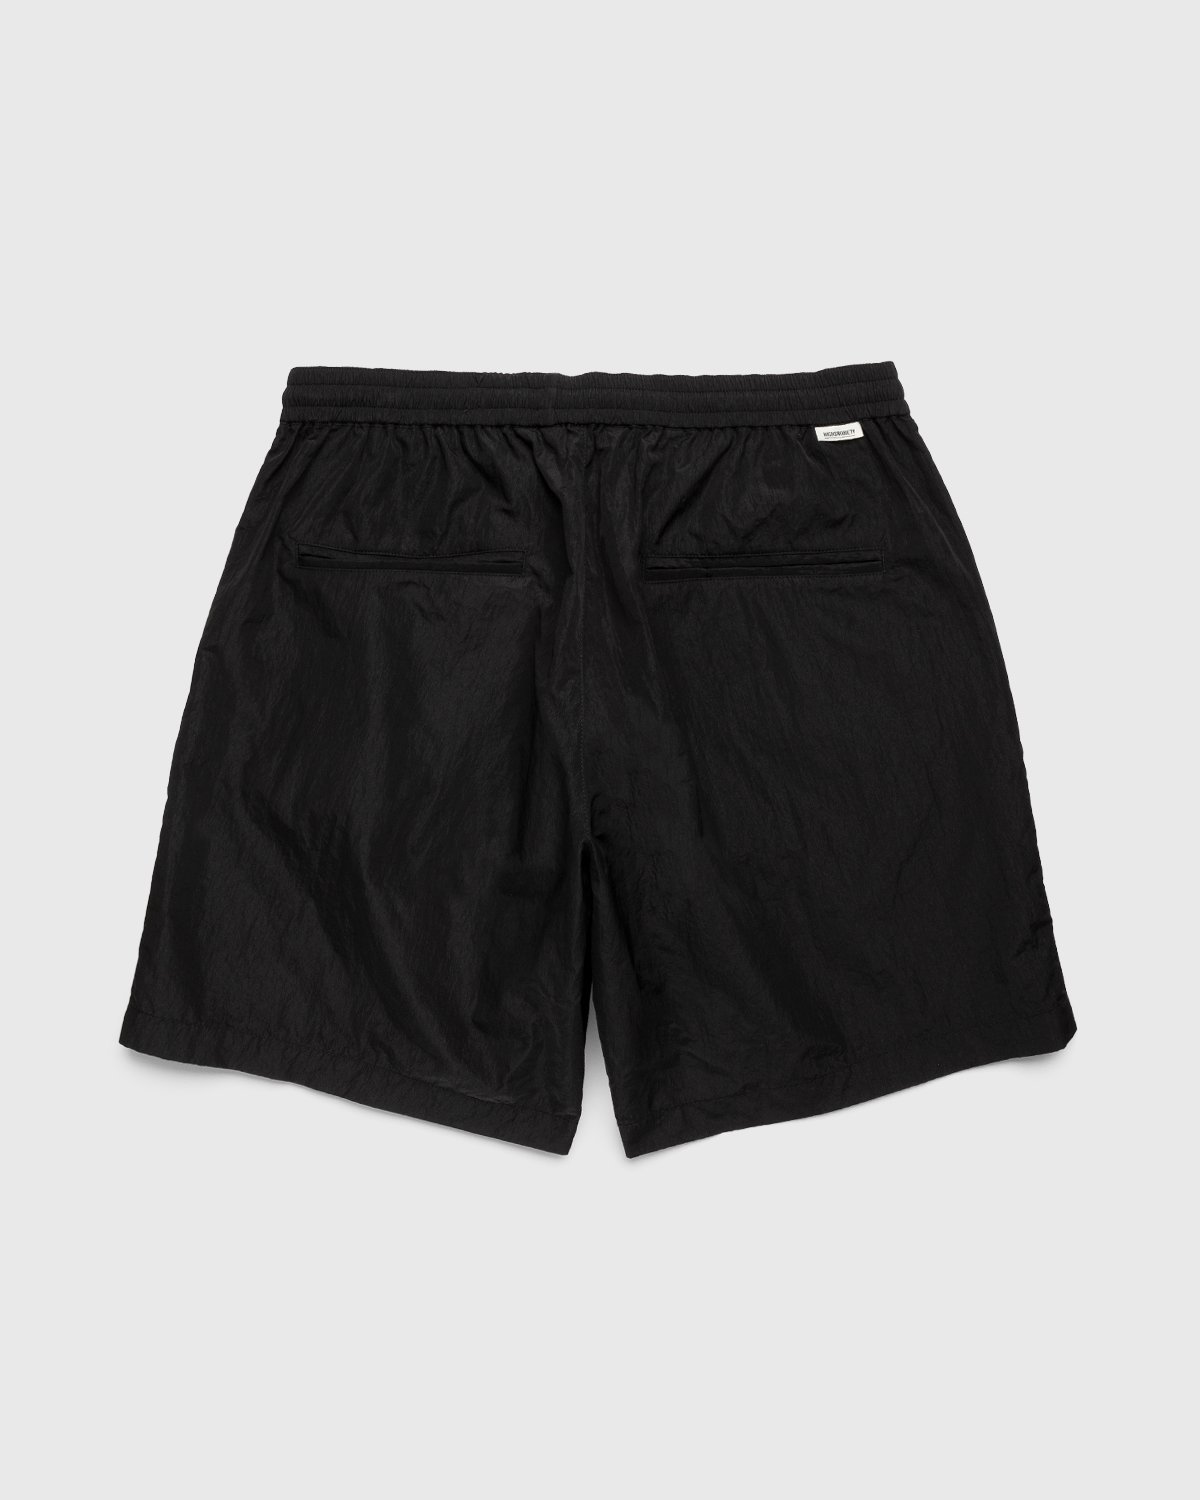 Highsnobiety - Crepe Nylon Shorts Black - Clothing - Black - Image 2